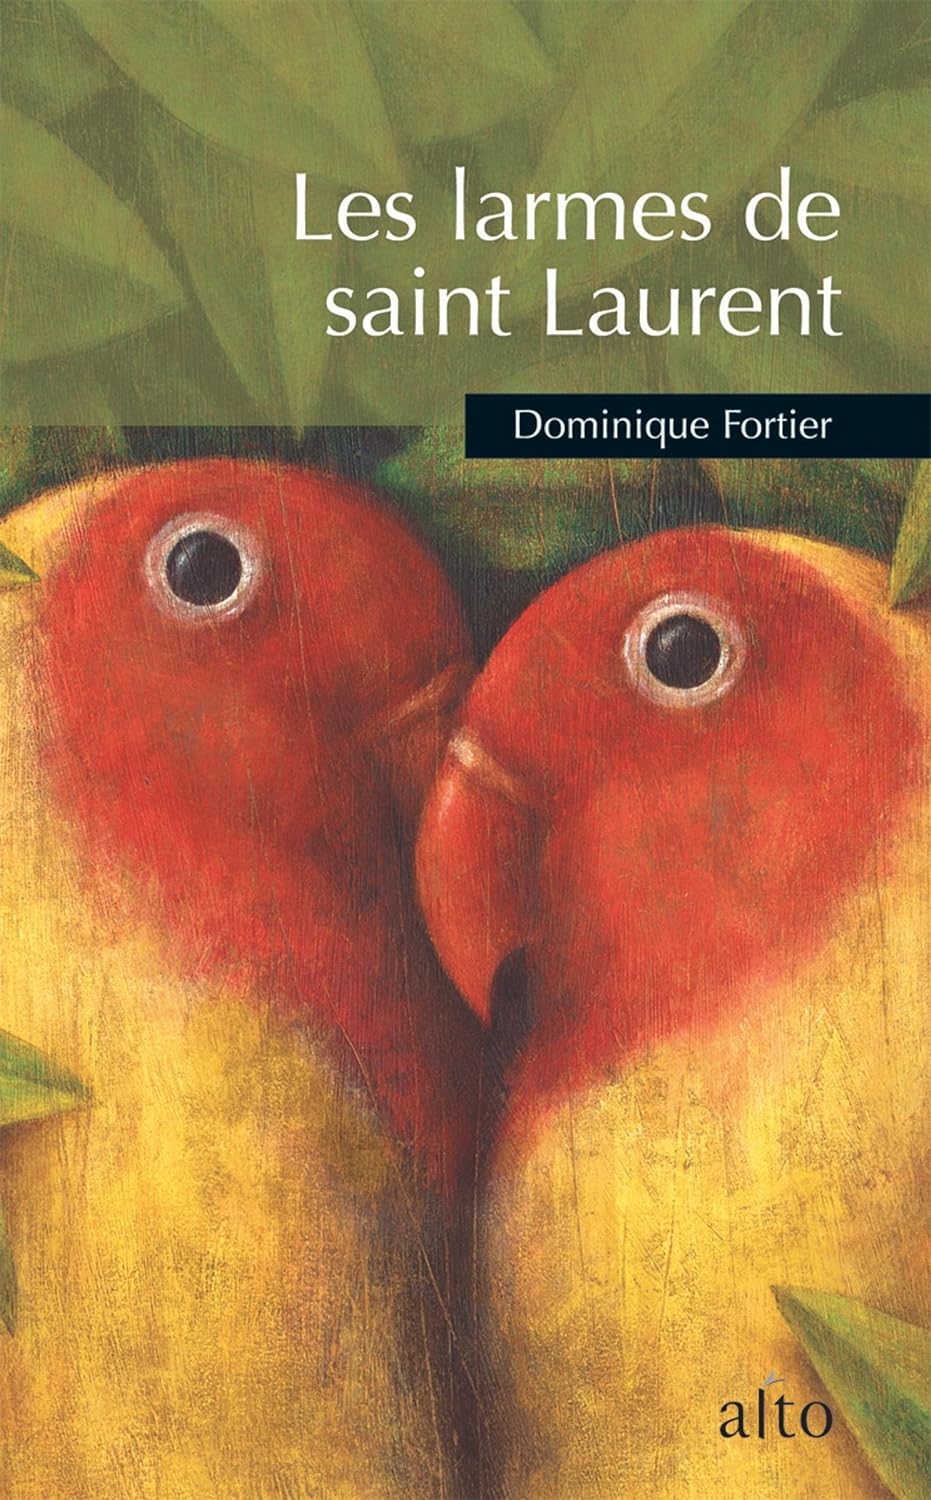 Les larmes de saint Laurent - Dominique Fortier